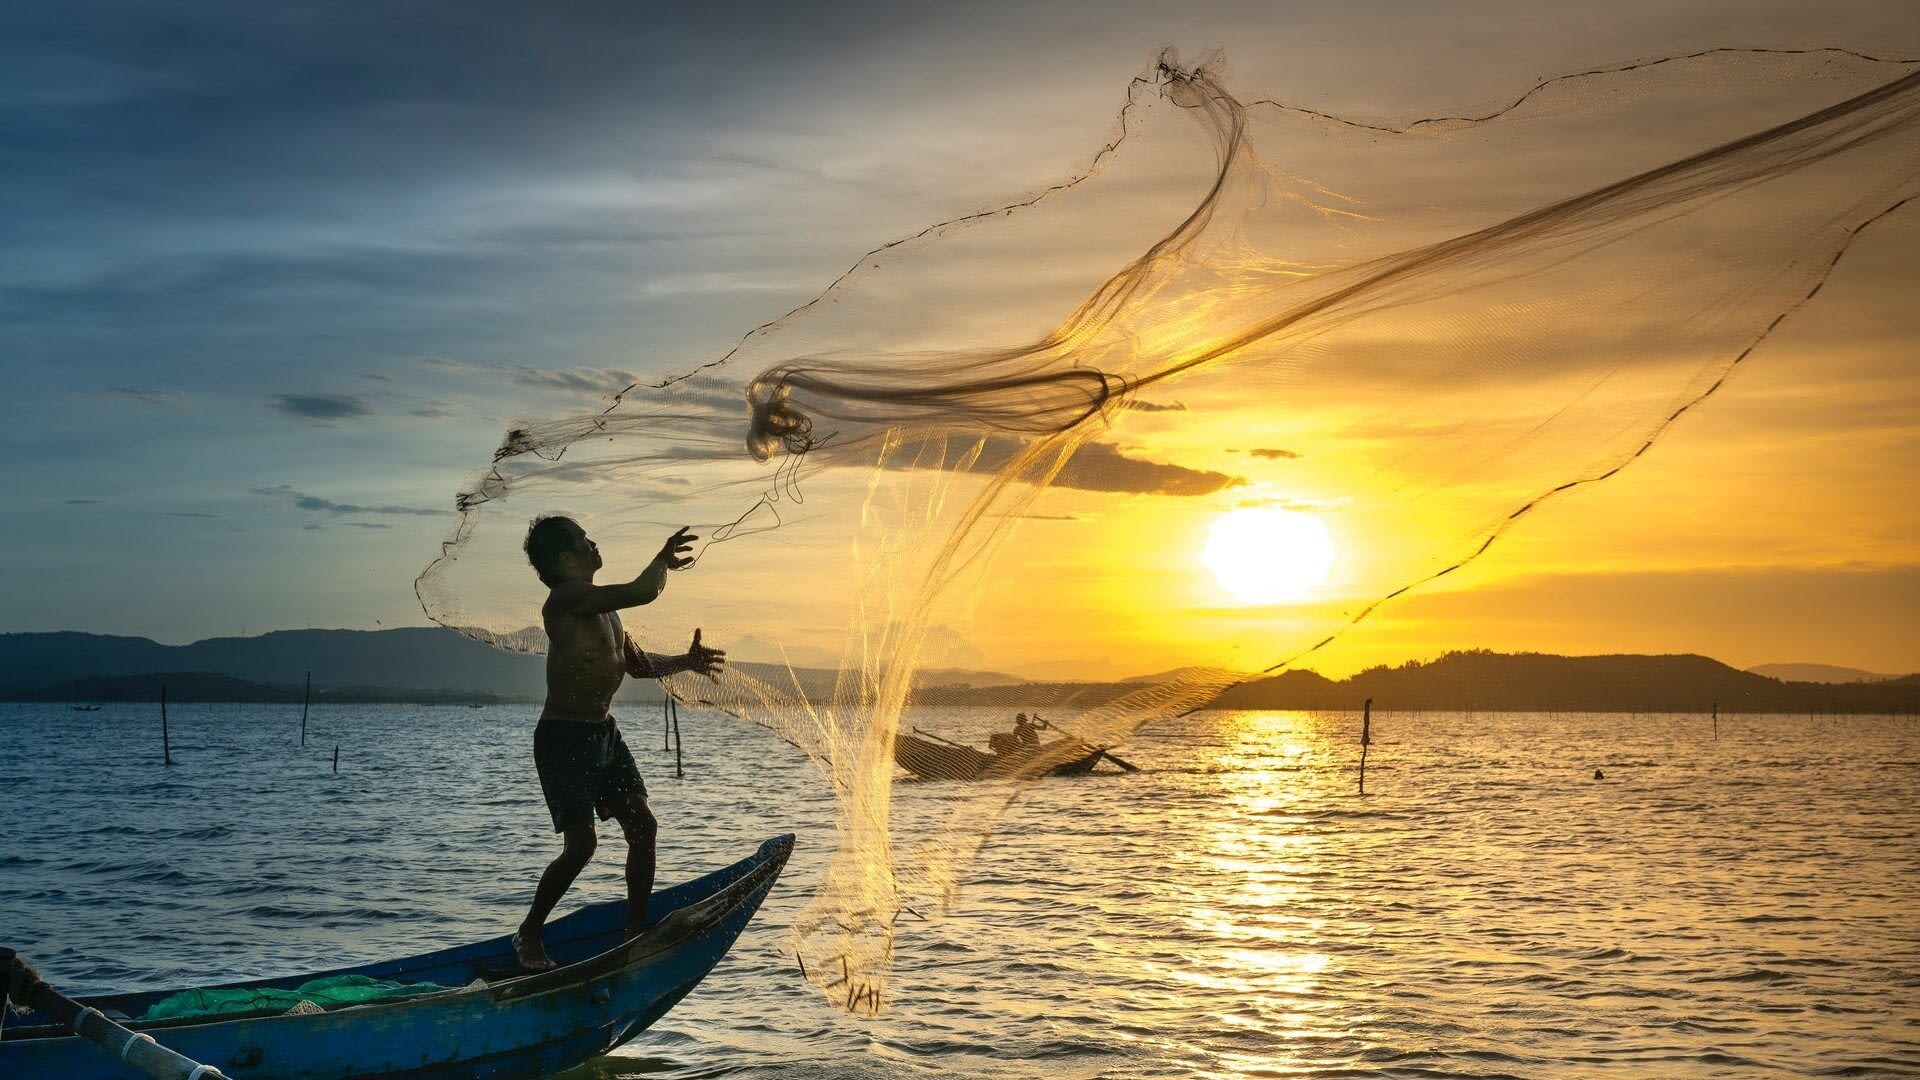 Image: Man throwing a fishing net at sunset